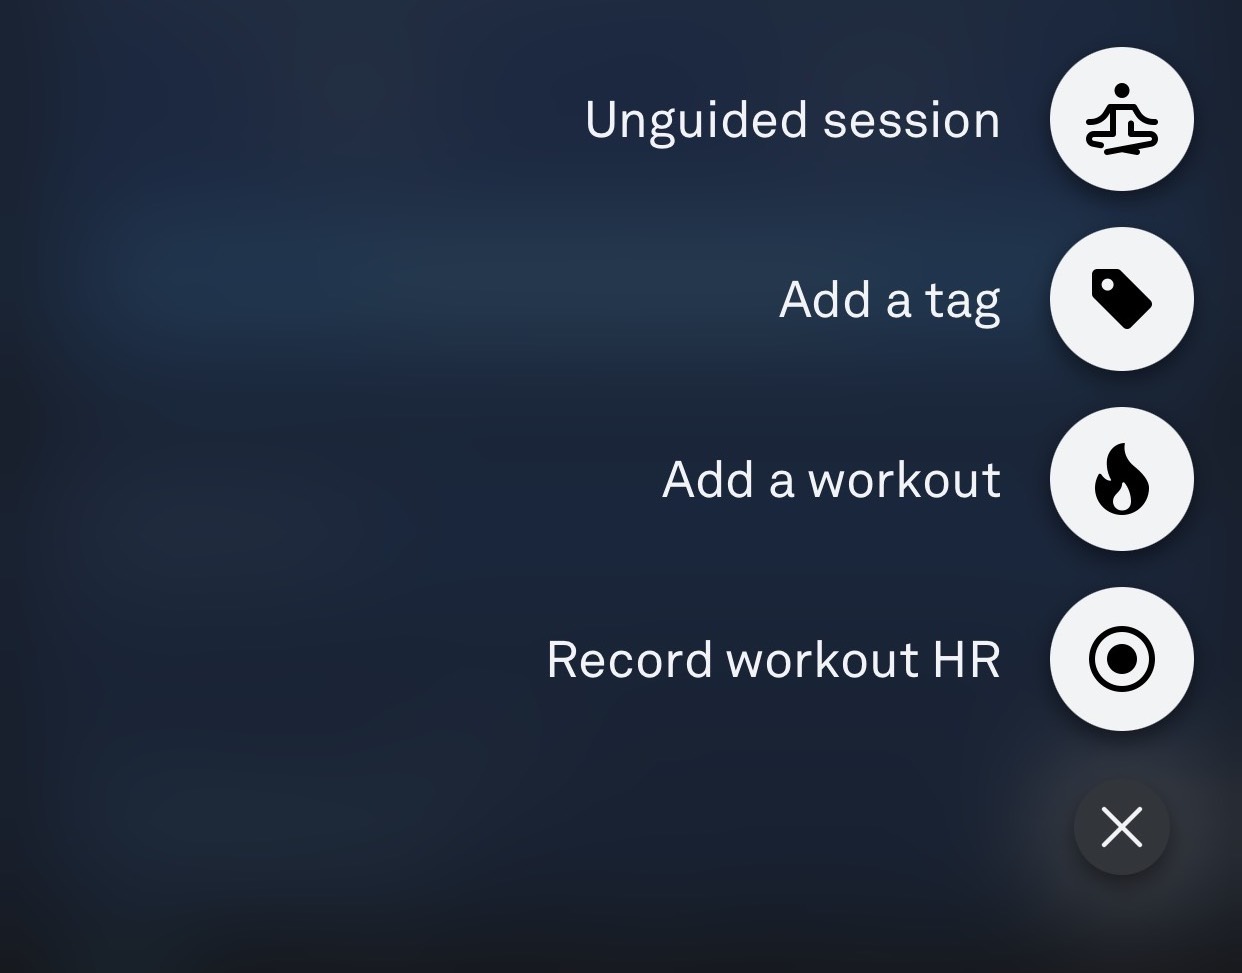 il menu azione come appare quando si preme il pulsante + nell'angolo in basso a destra dell'app Oura. The four menu options are unguided session, add a tag, add a workout, and record workout HR